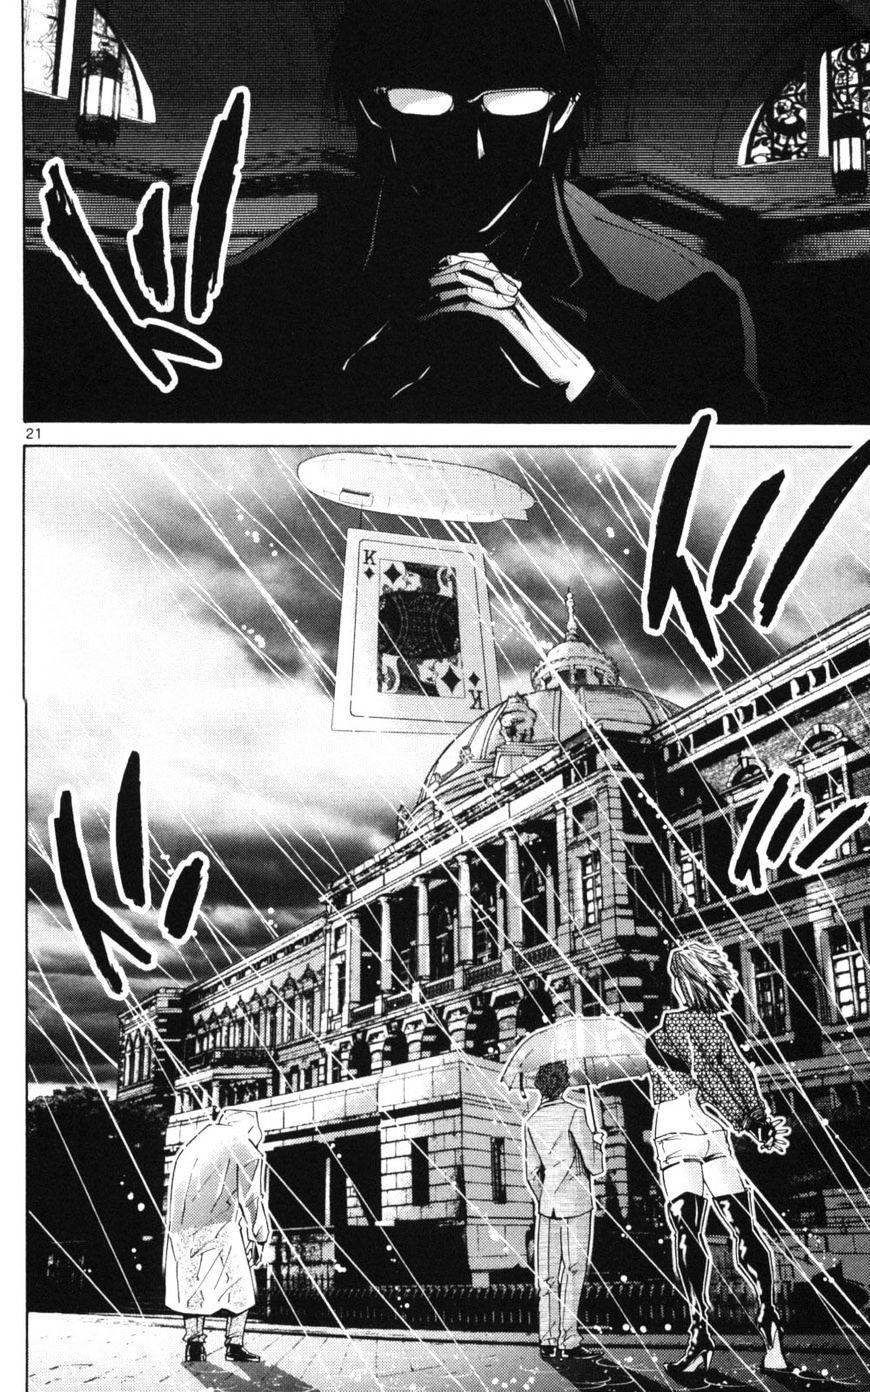 Imawa No Kuni No Alice Chapter 51.1 : Side Story 6 - King Of Diamonds (1) page 21 - Mangakakalot